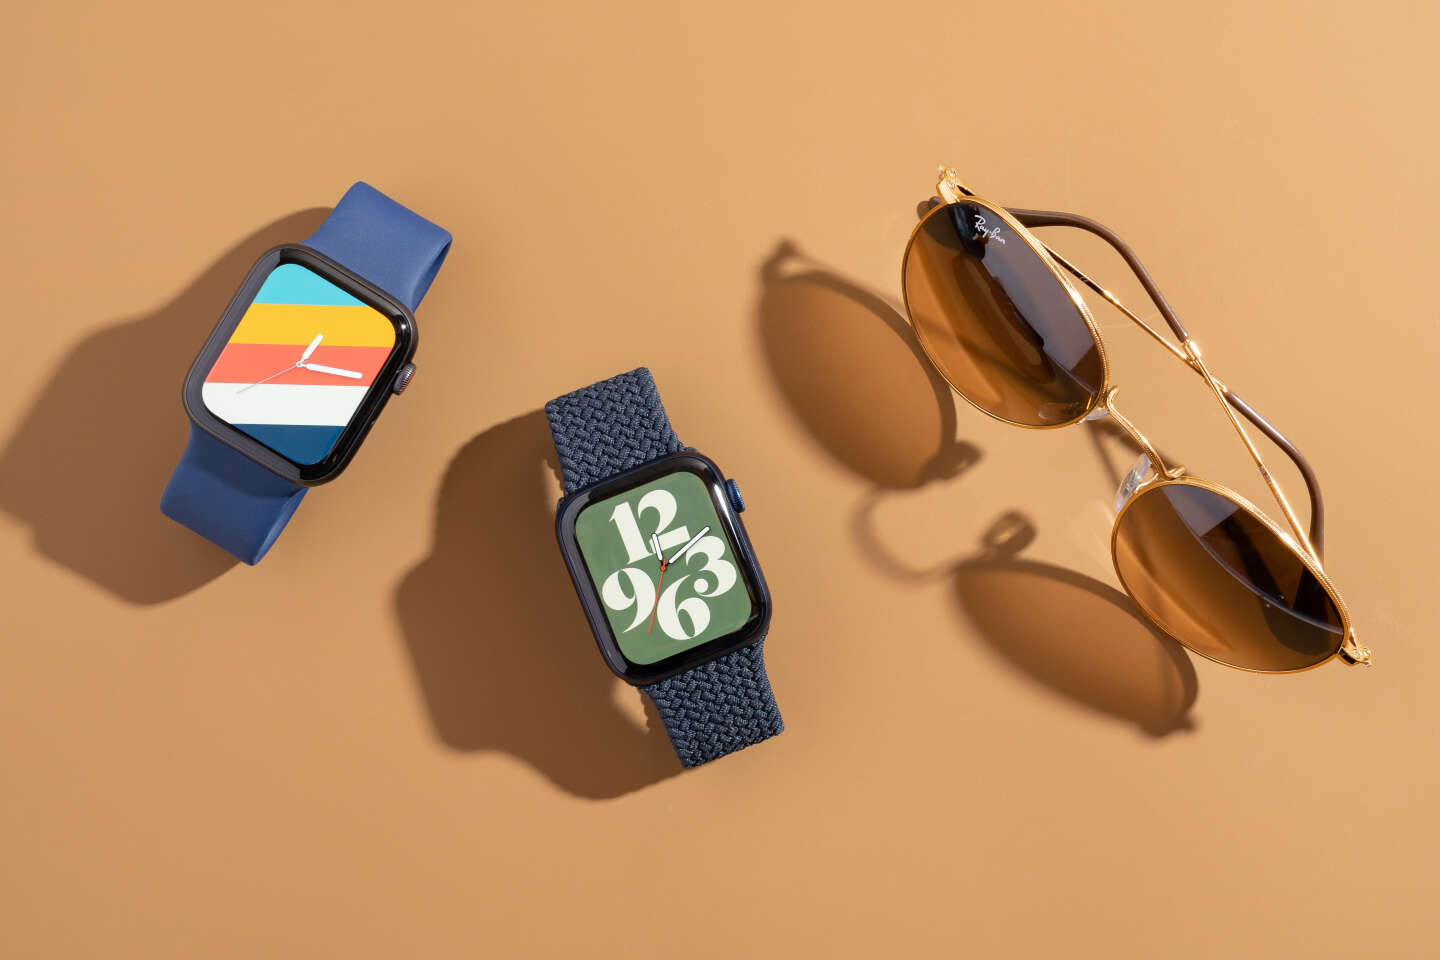 L'Apple Watch compatible avec Android ? Apple était prêt à se lancer